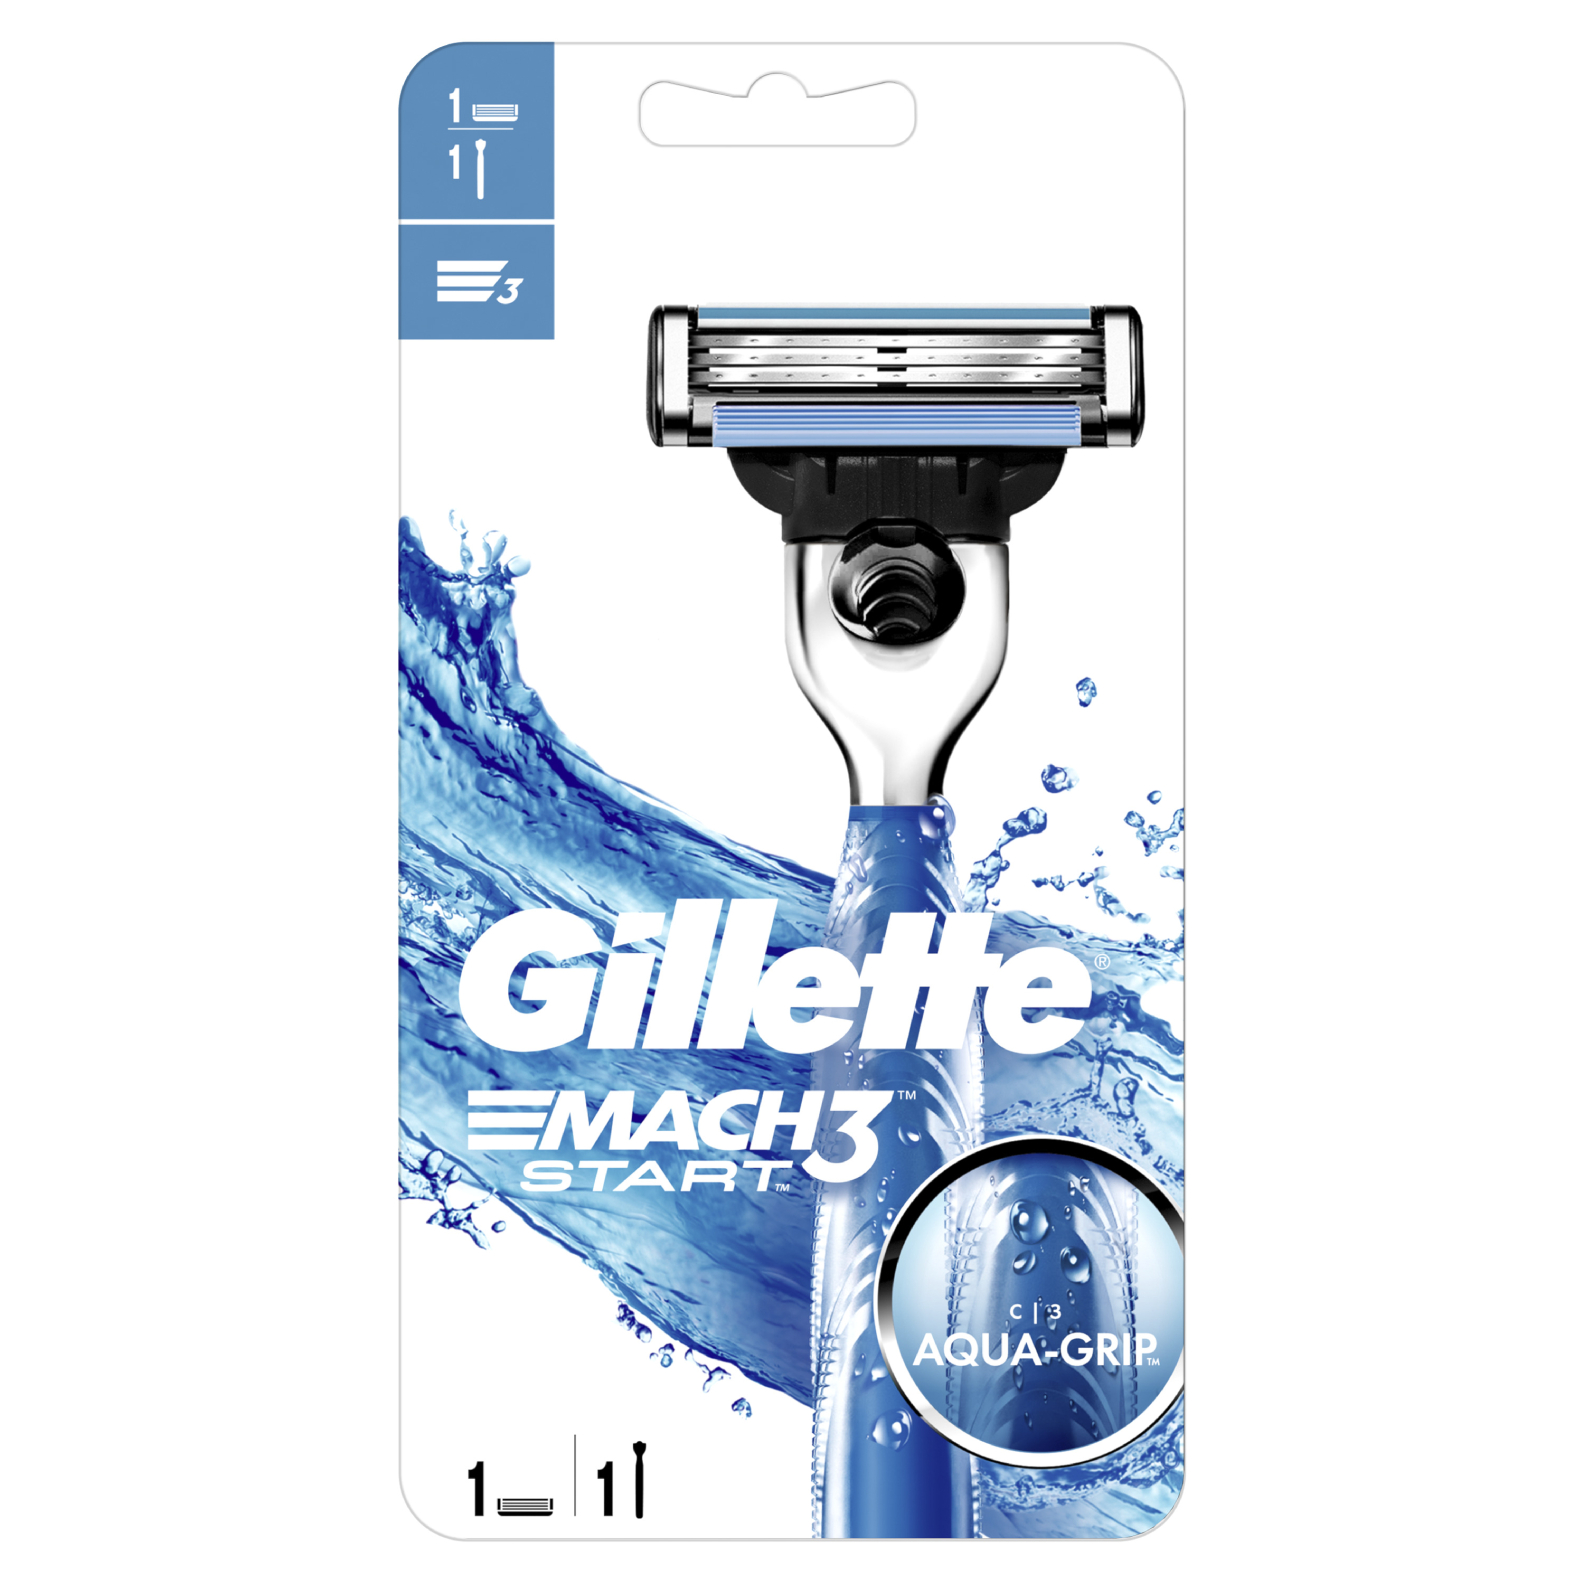 Мужская бритва Gillette Мach3 start , 1 кассета с 3 лезвиями, прочнее, чем сталь, для точного бритья, с ручкой aqua-grip wilder станок для бритья мужской бритва мужская многоразовая man a5l 1